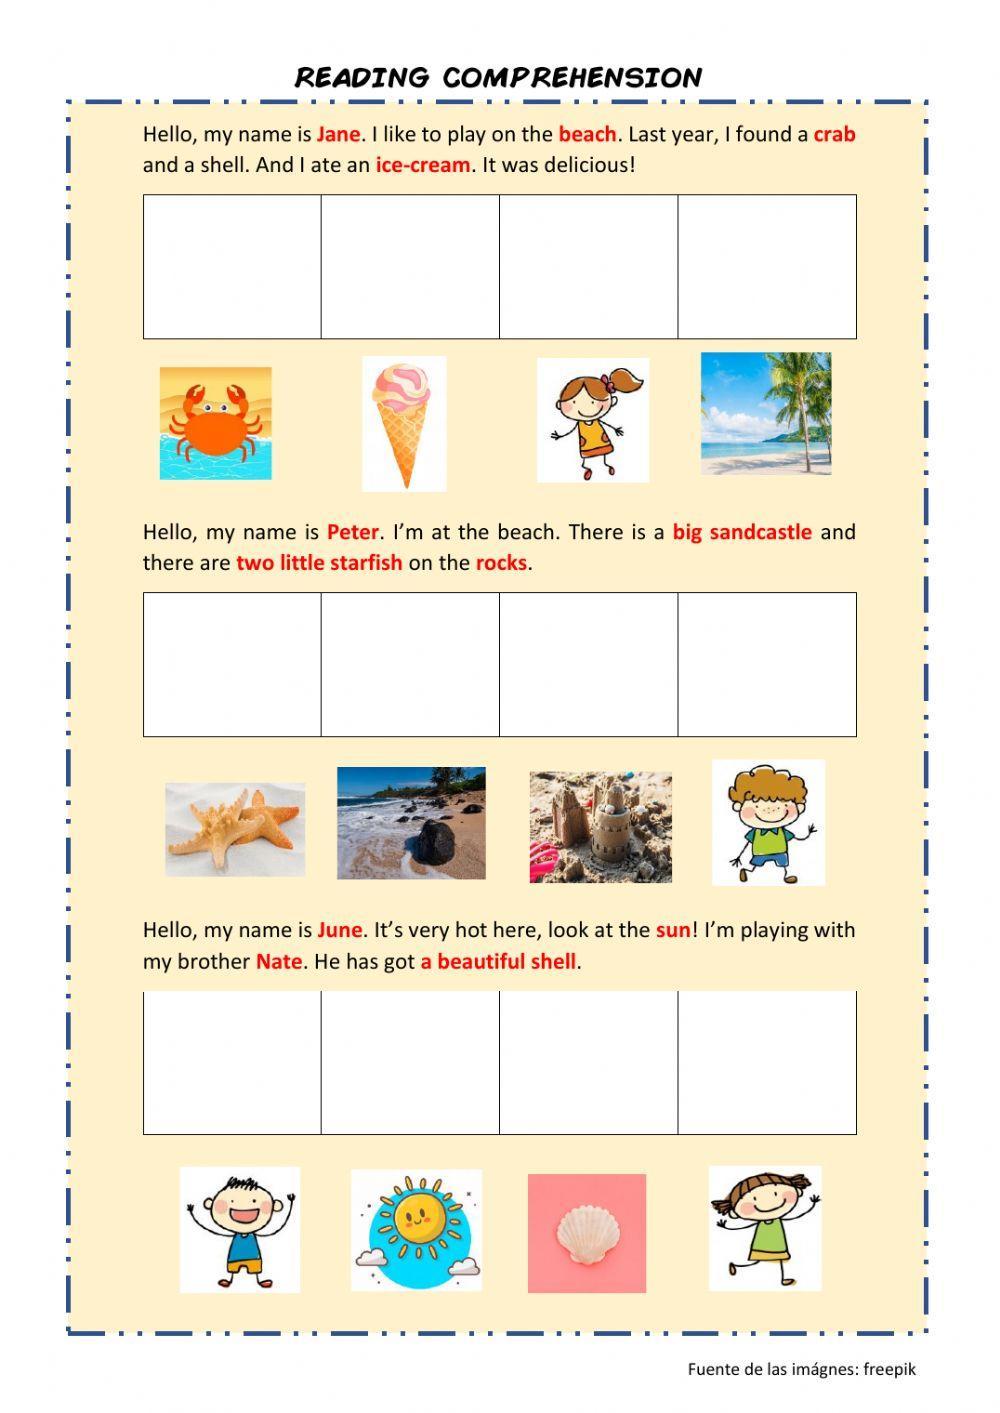 Reading comprehencion - beach vocabulary